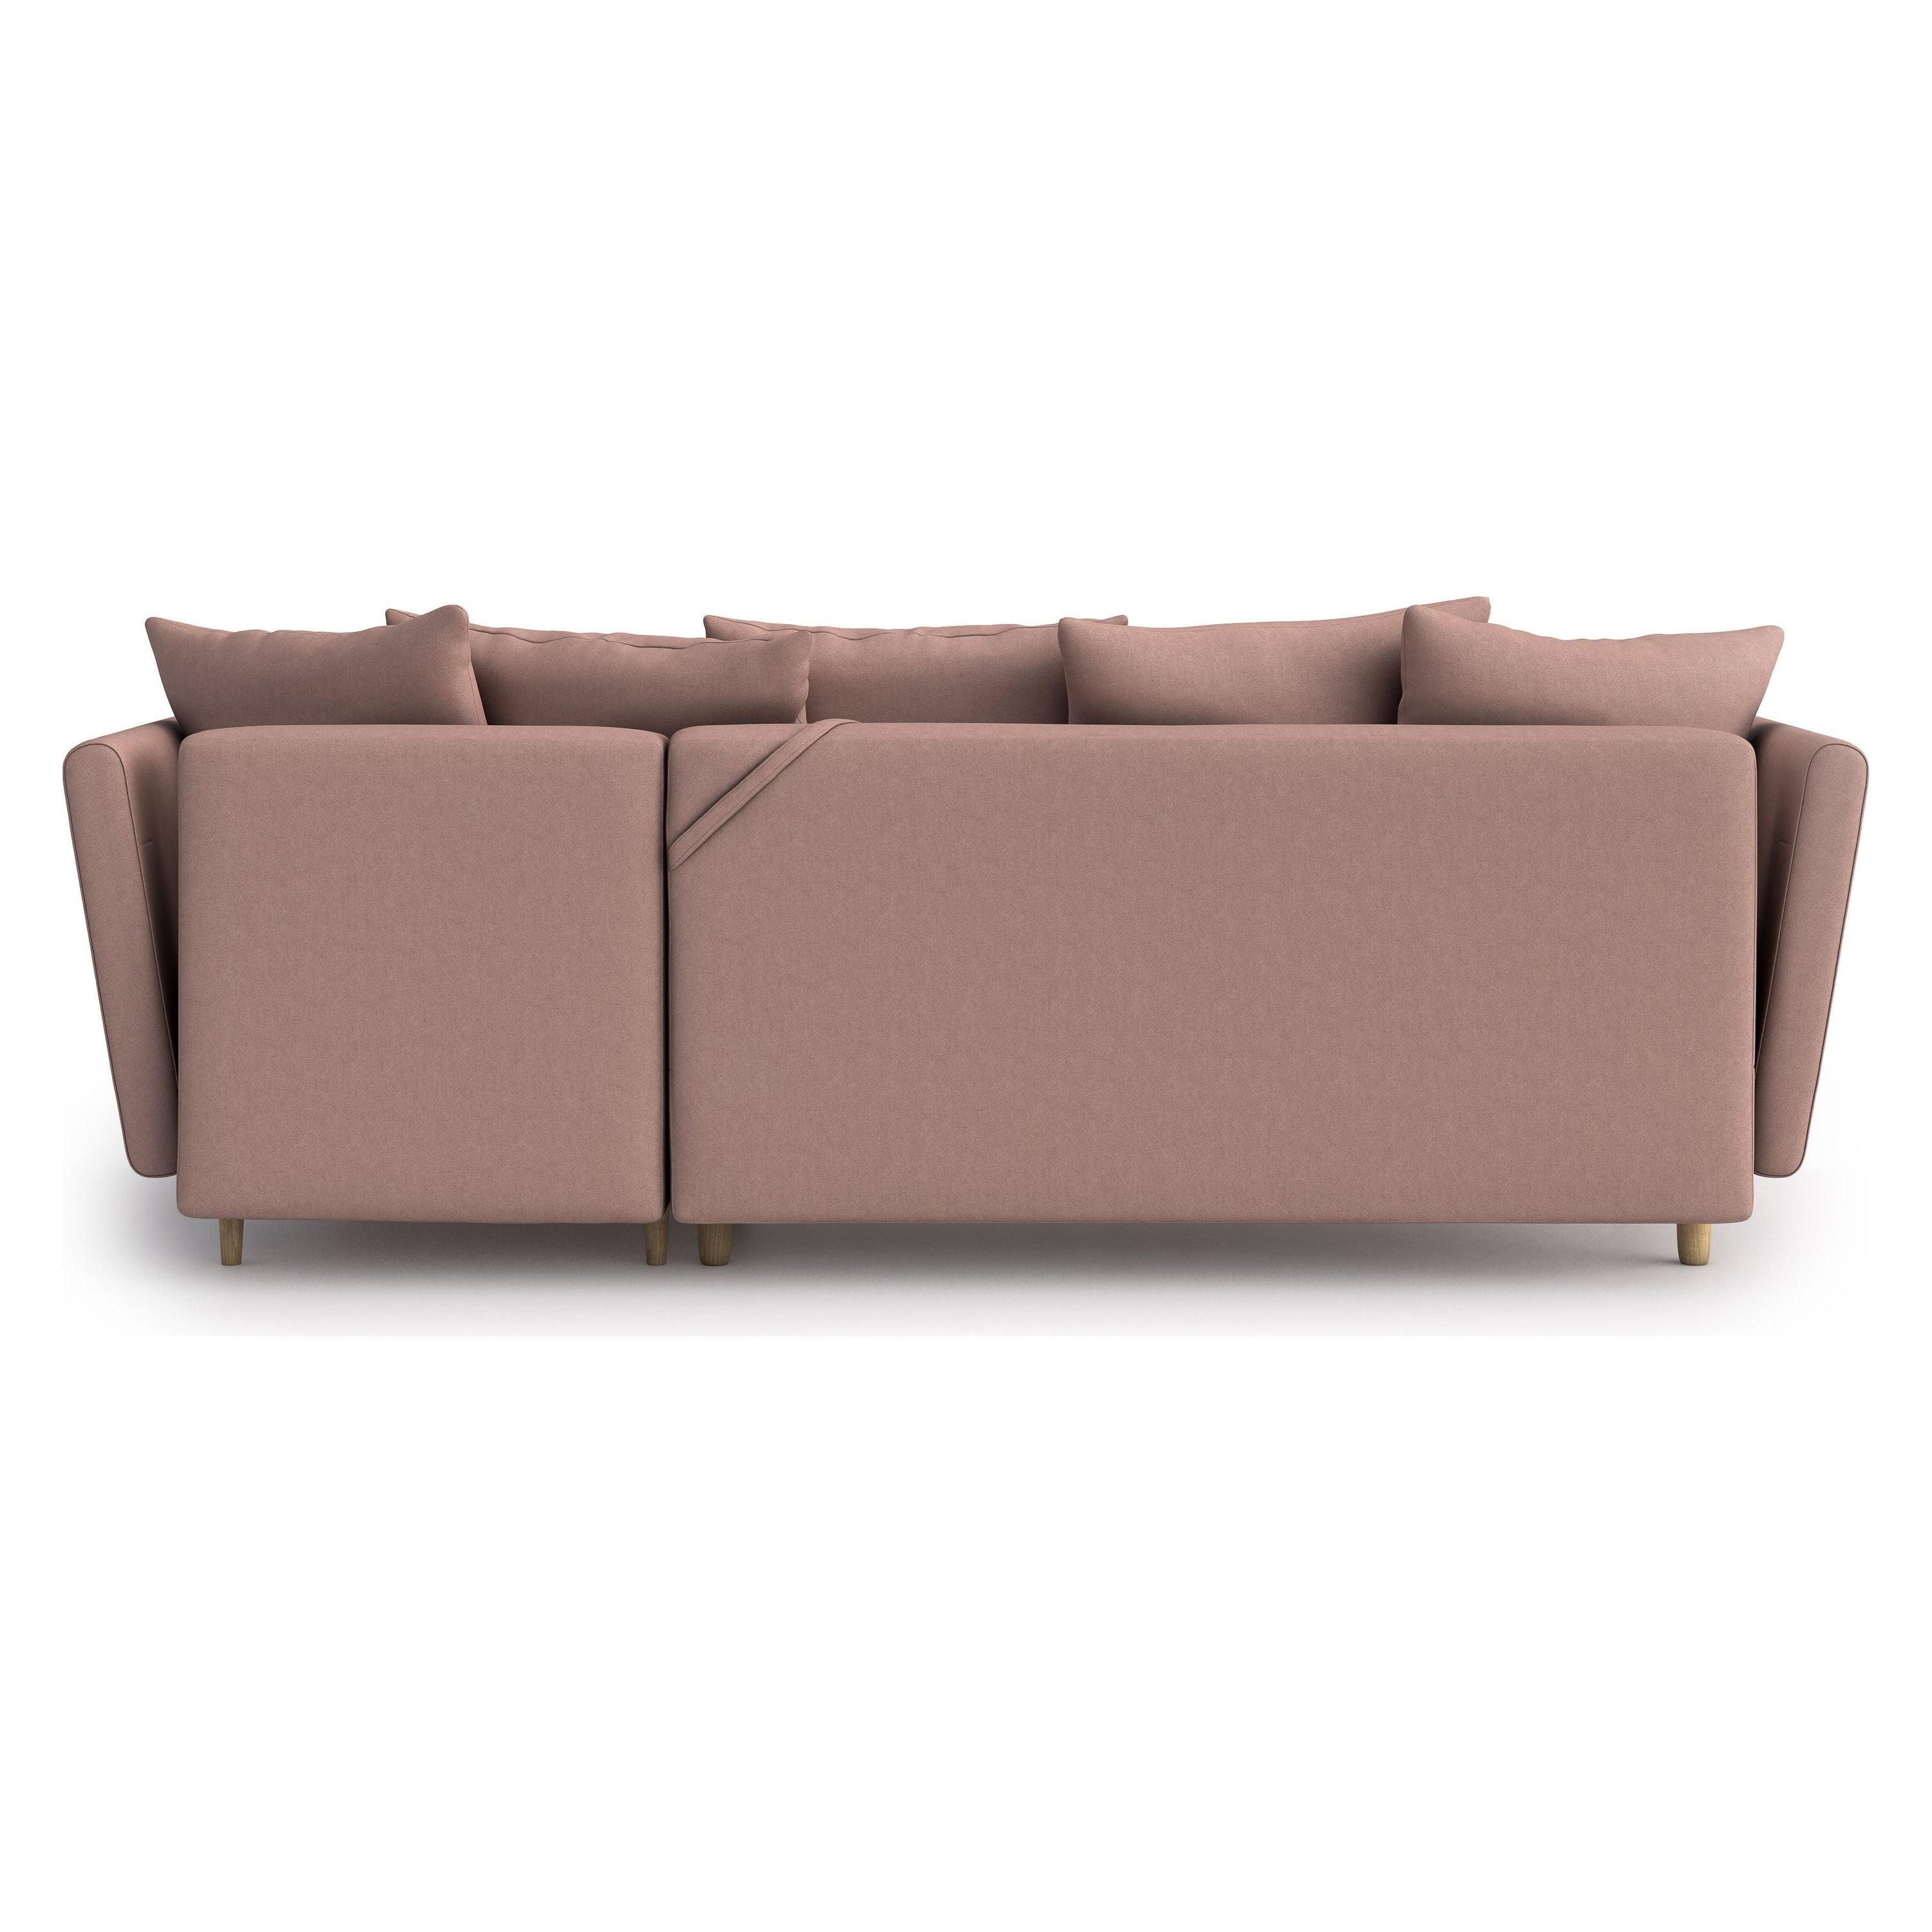 JOLEEN kampinė sofa lova, rožinė spalva, universali kampo pusė